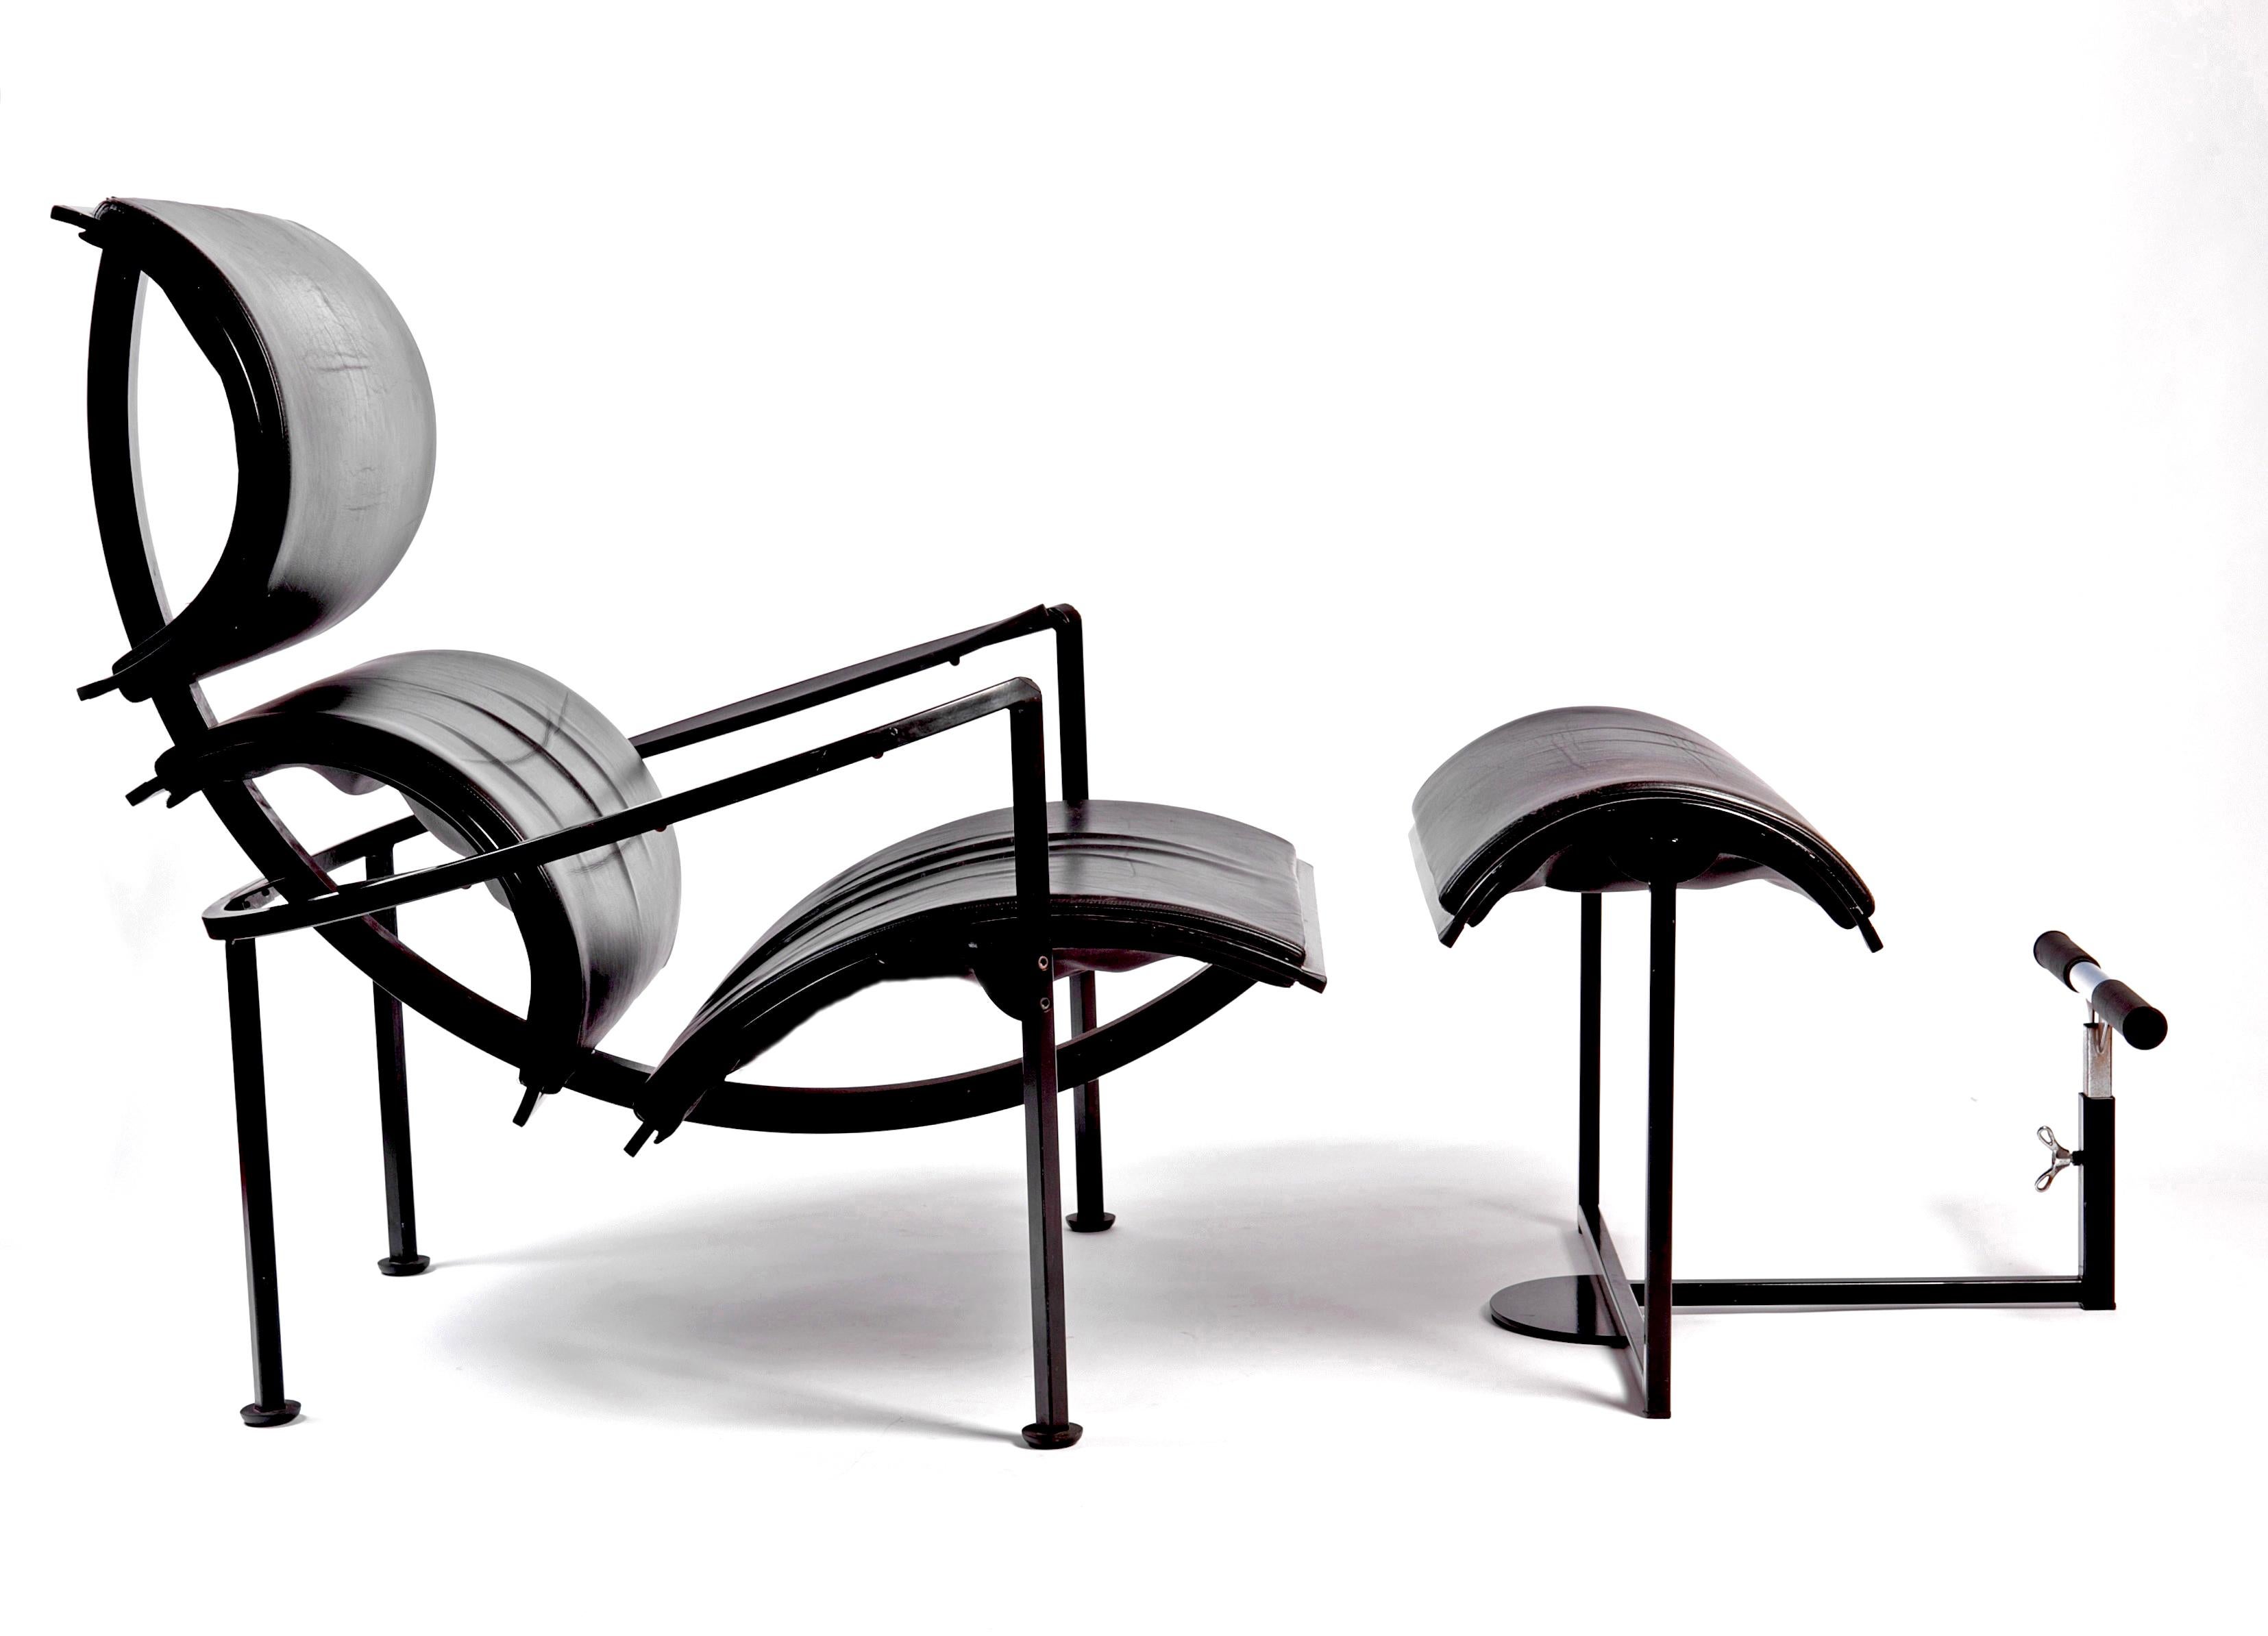 Fabuleuse chaise longue italienne Signora Chan de Carlo Forcolini. Le cadre est en acier émaillé avec du cuir noir souple et un ottoman assorti. C'est une pièce très originale. Non seulement beau mais aussi confortable !
L'ottoman mesure : 18